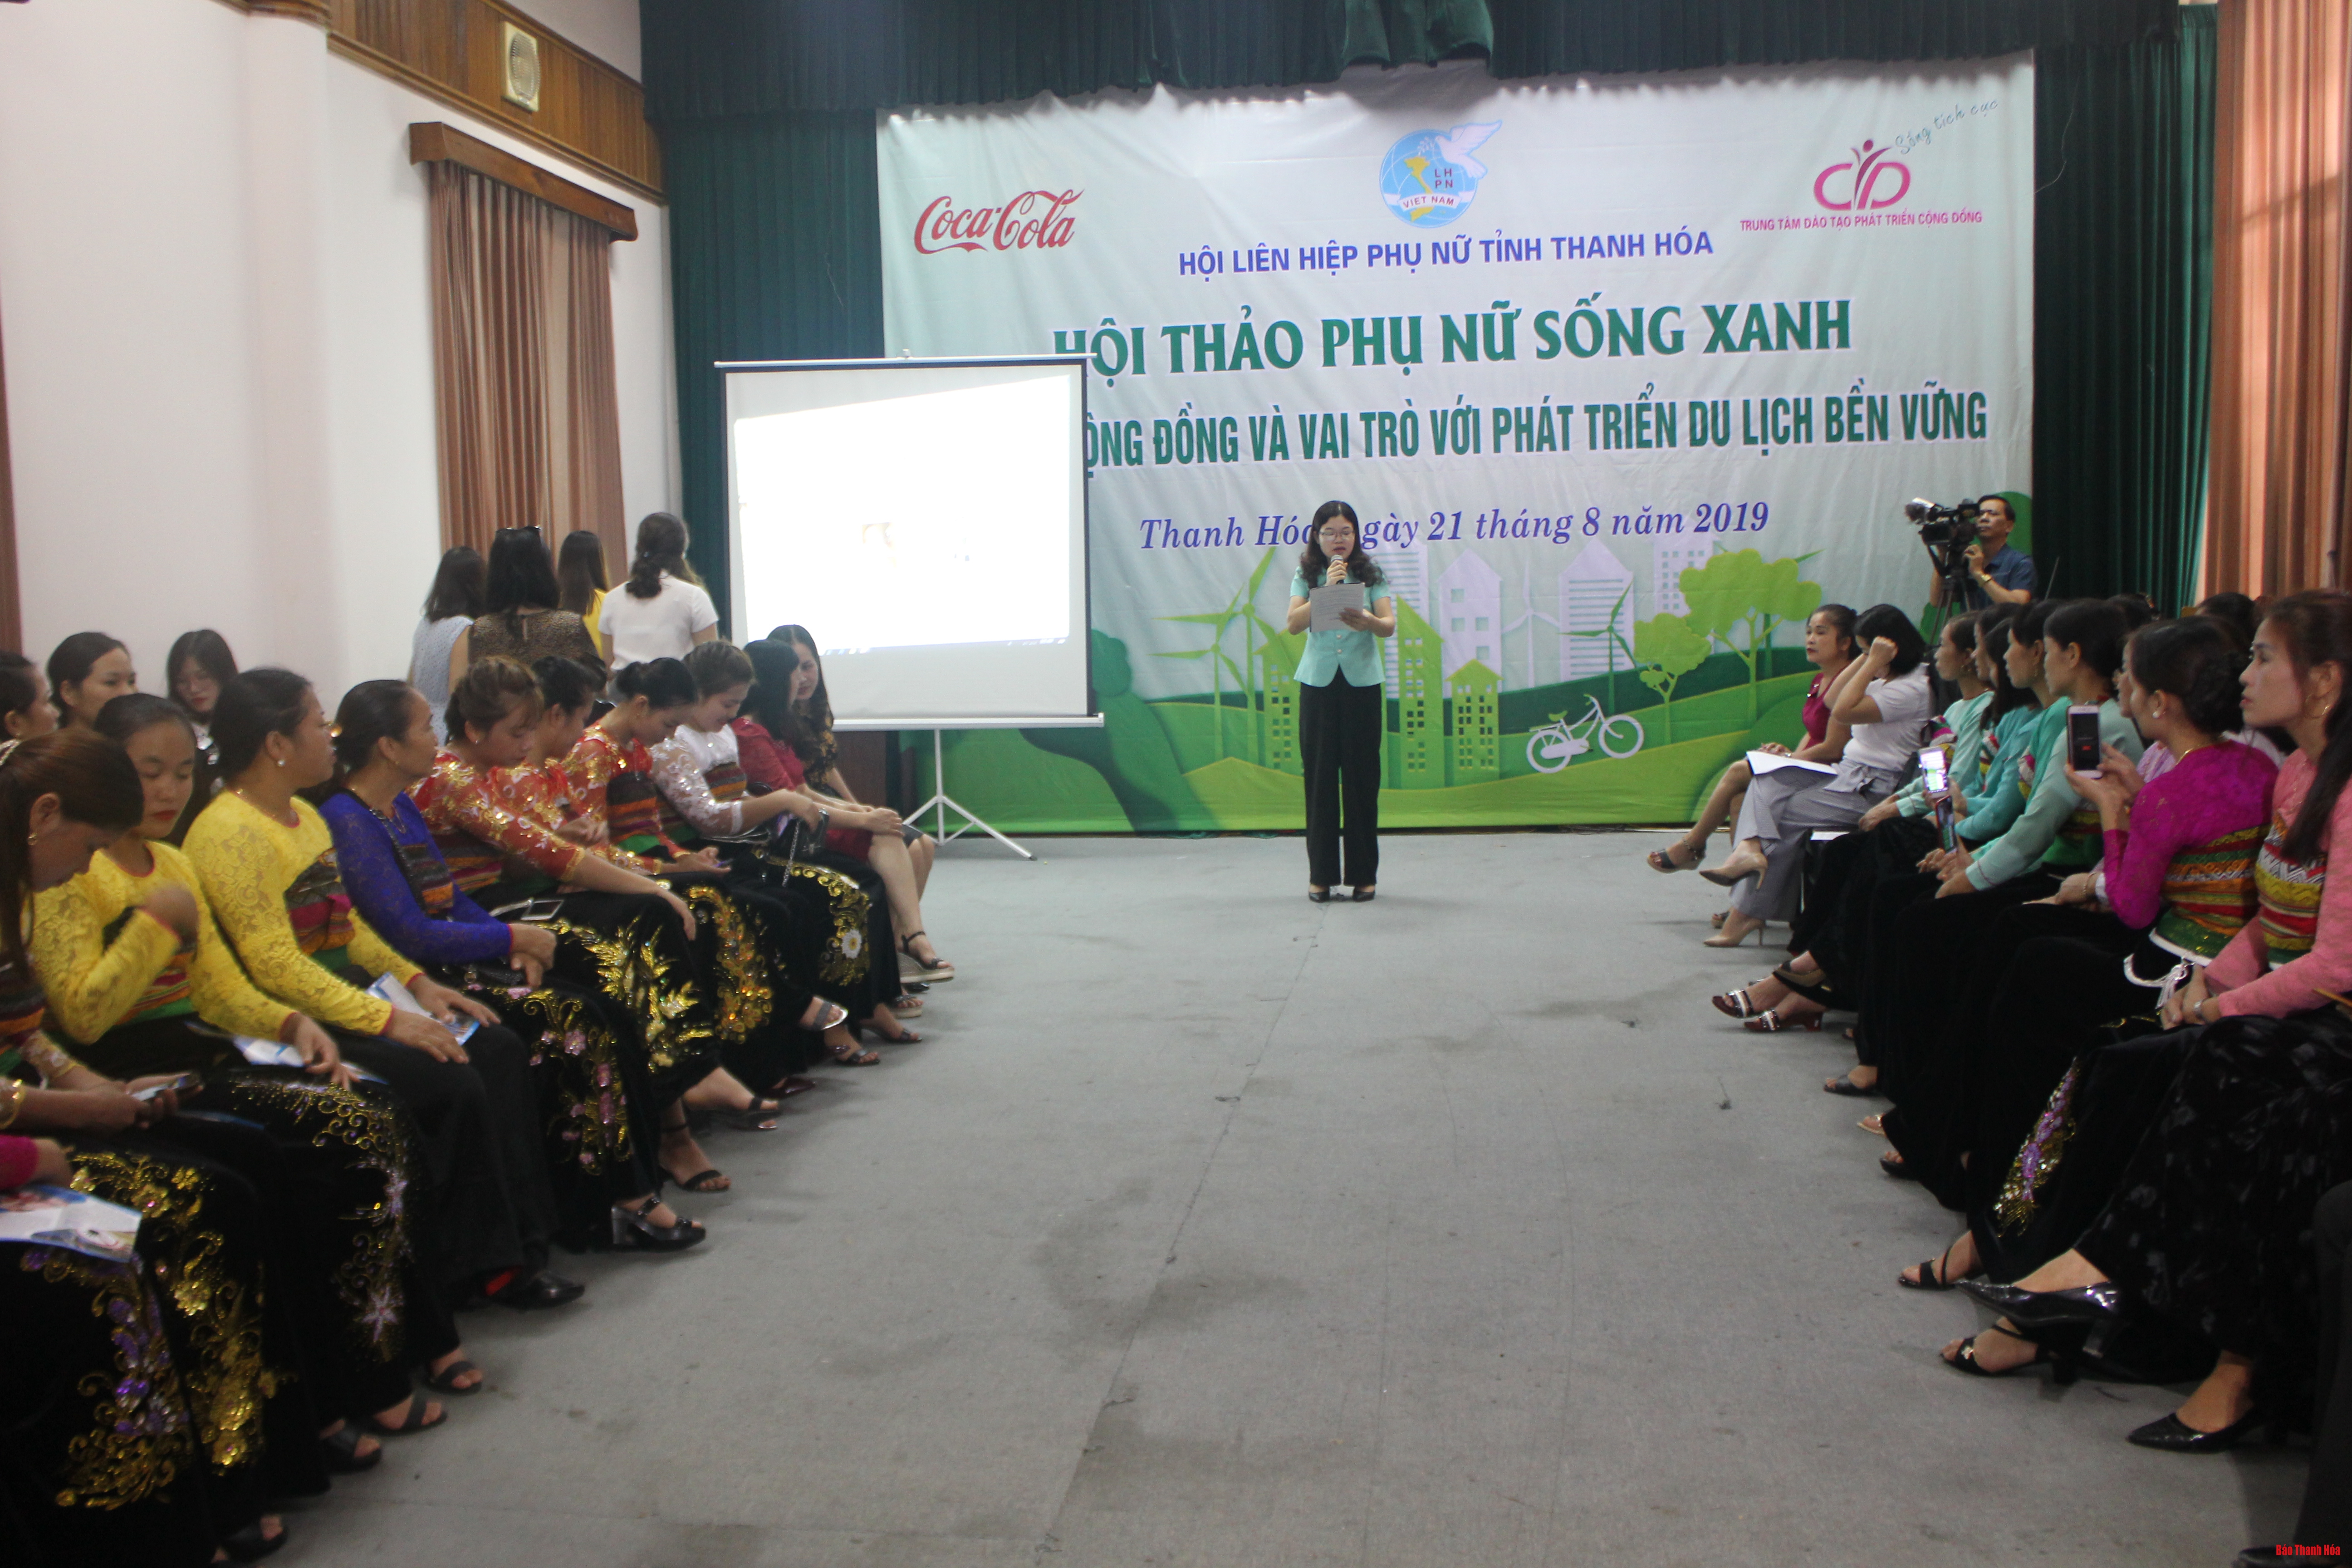 Hội thảo phụ nữ sống xanh du lịch cộng đồng và vai trò với phát triển du lịch bền vững